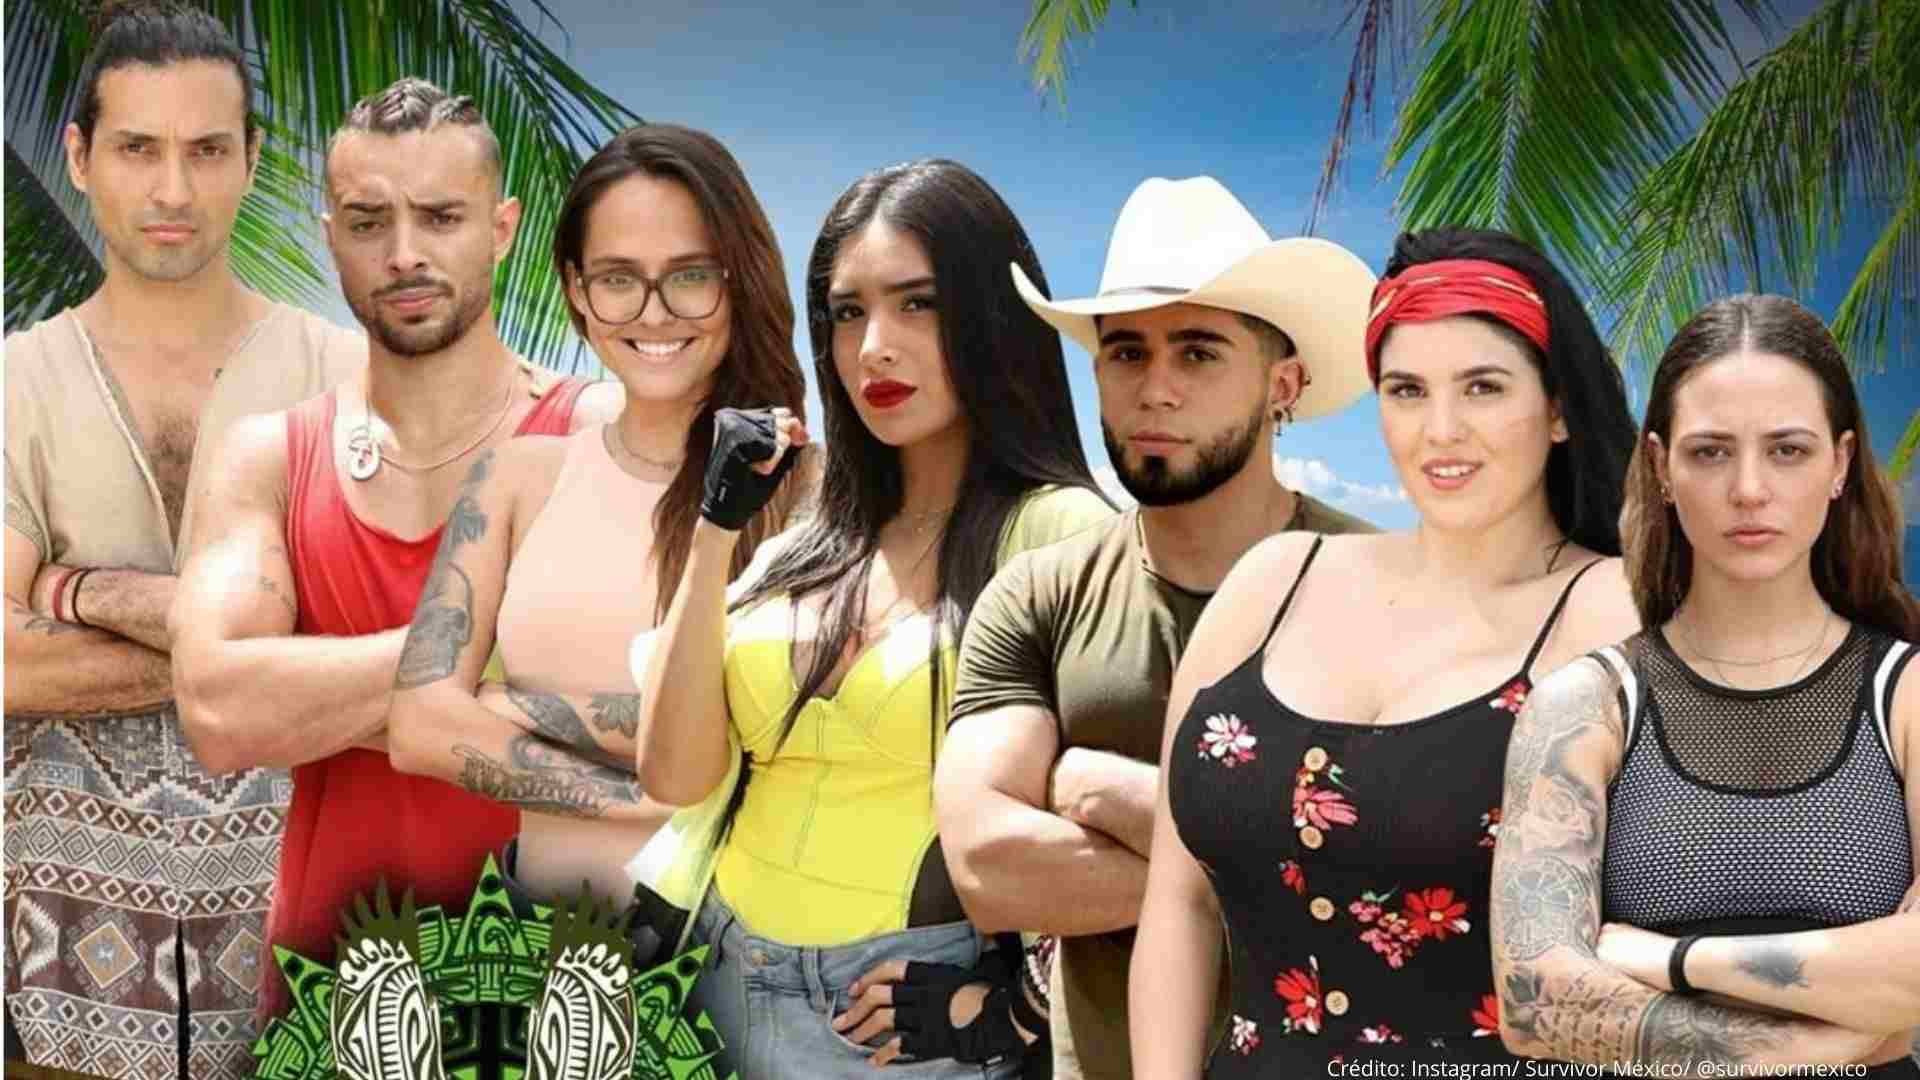 ¡Spoiler alert! Filtran lista de ganadores de "Survivor México"